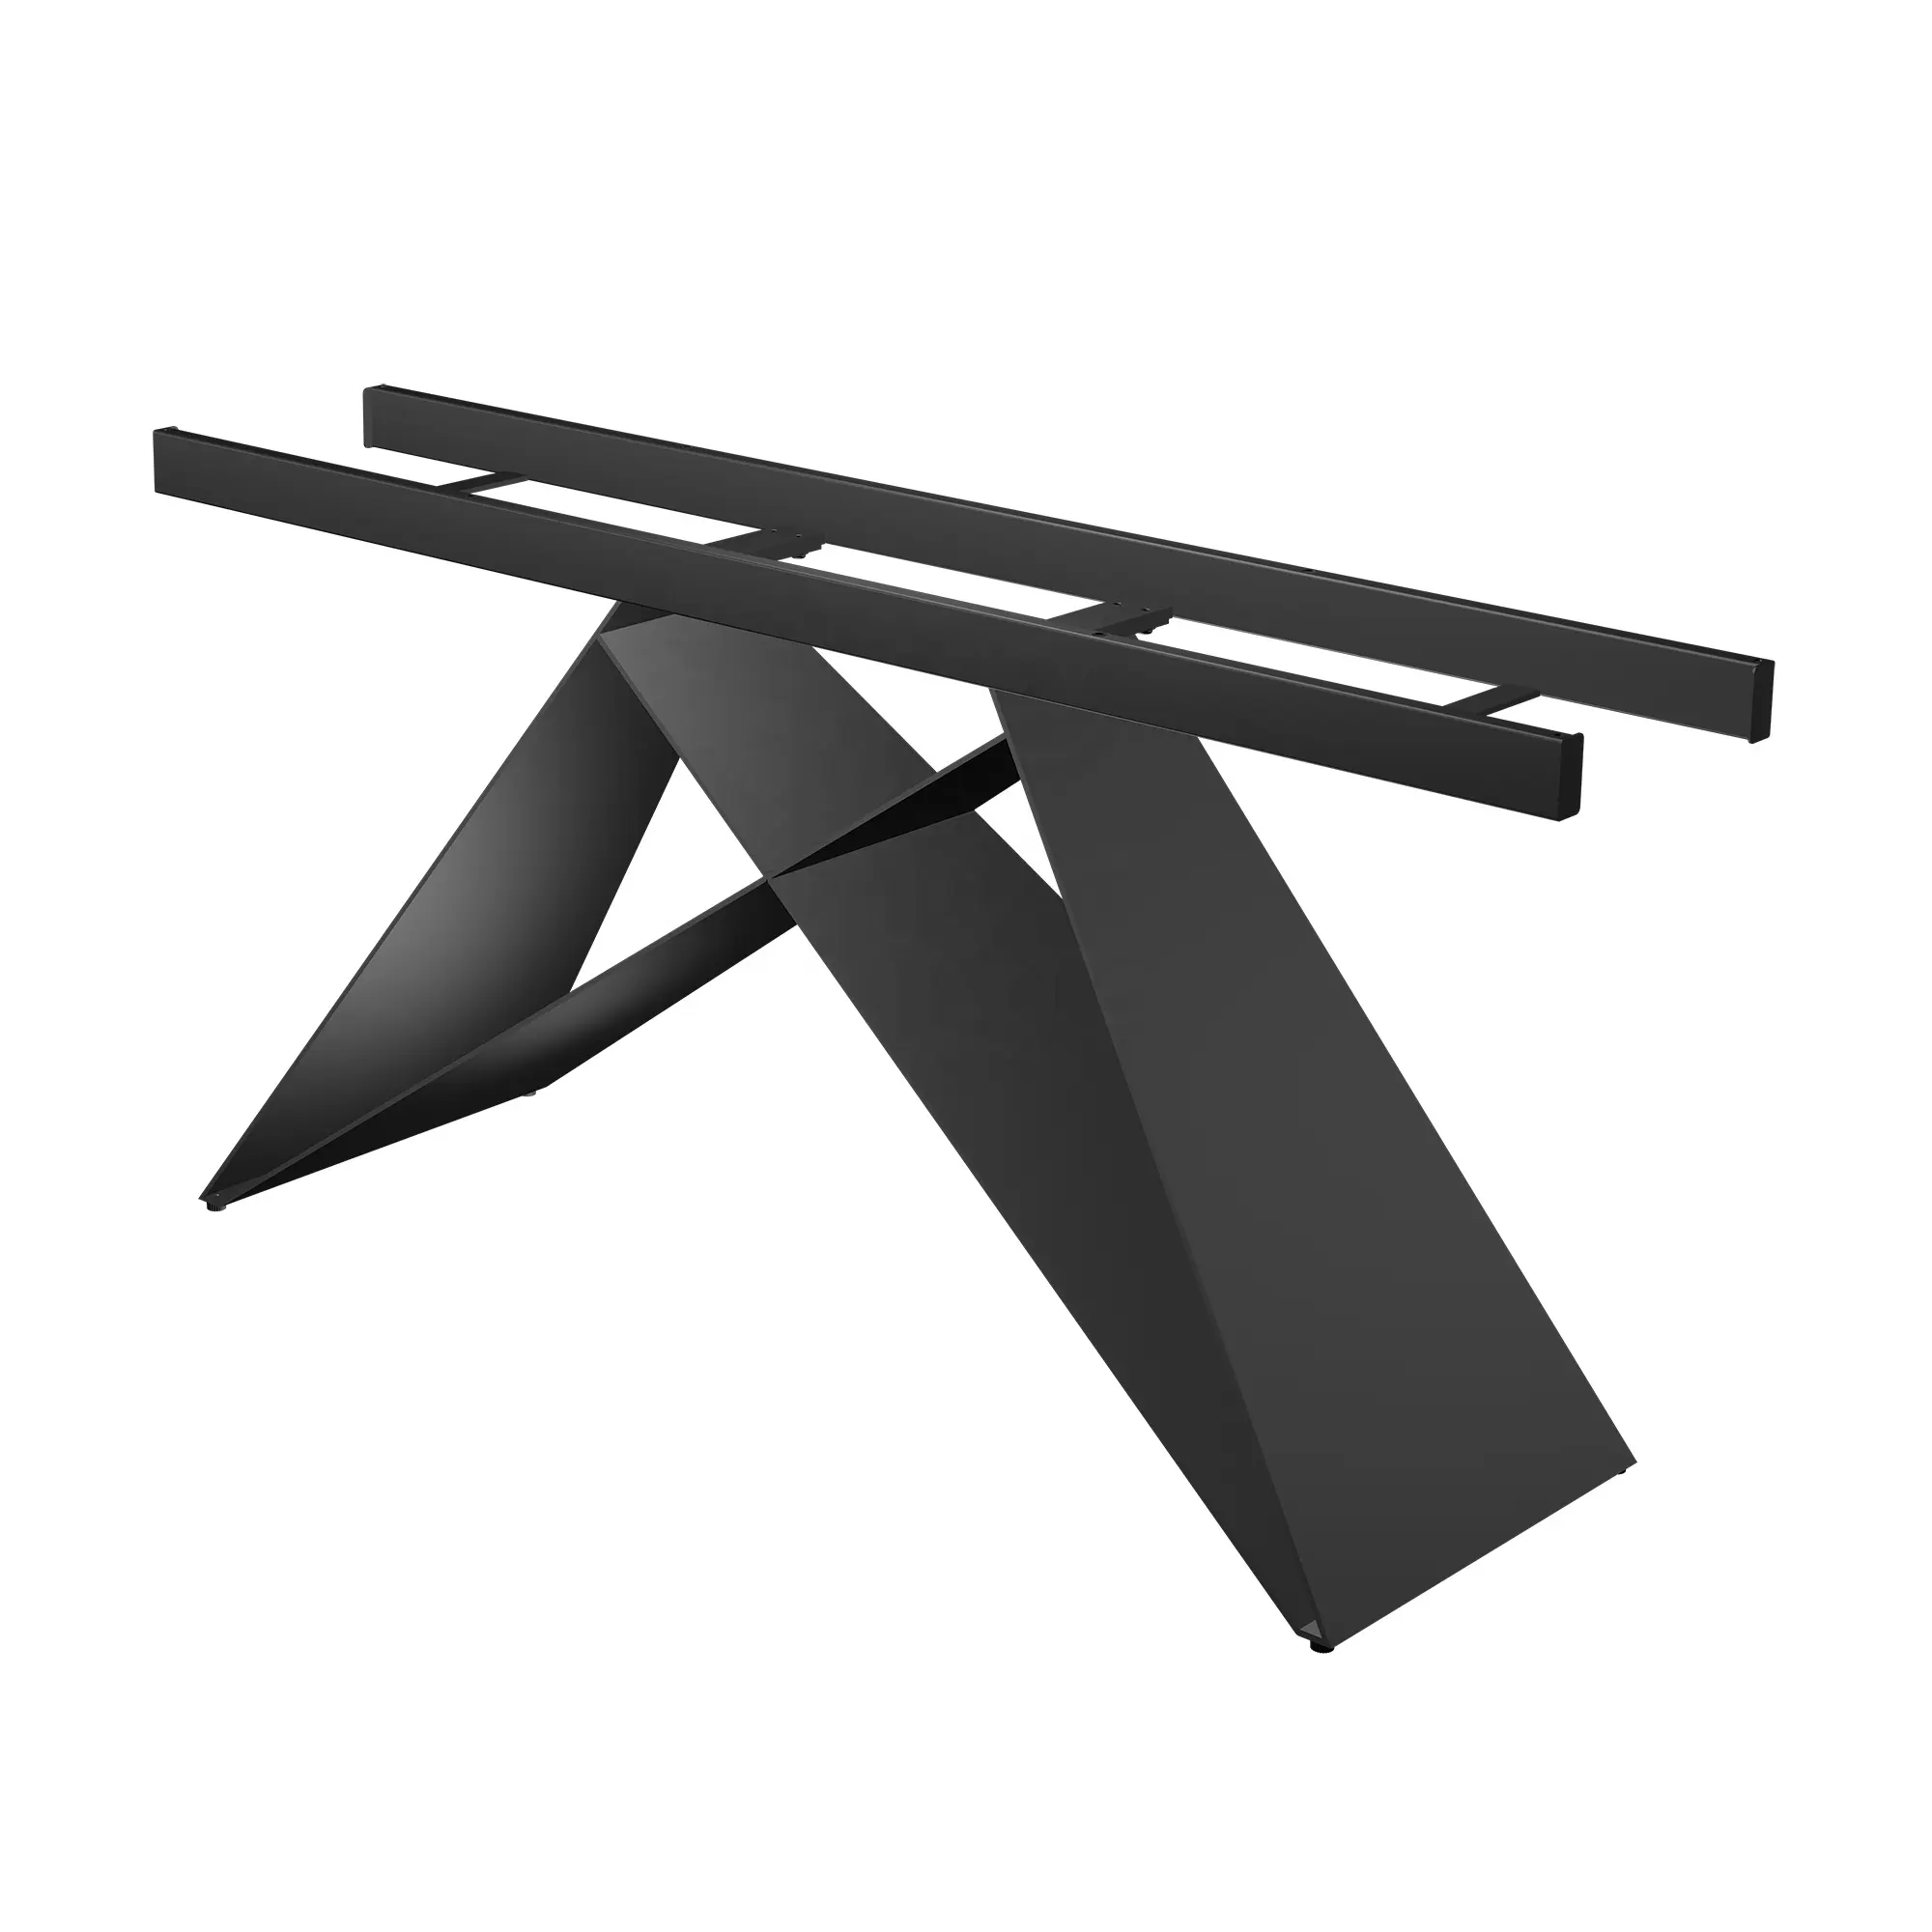 Gamba del tavolo per mobili personalizzata in fabbrica gambe del tavolo da pranzo cromate nere da 710mm per tavoli da pranzo da cucina